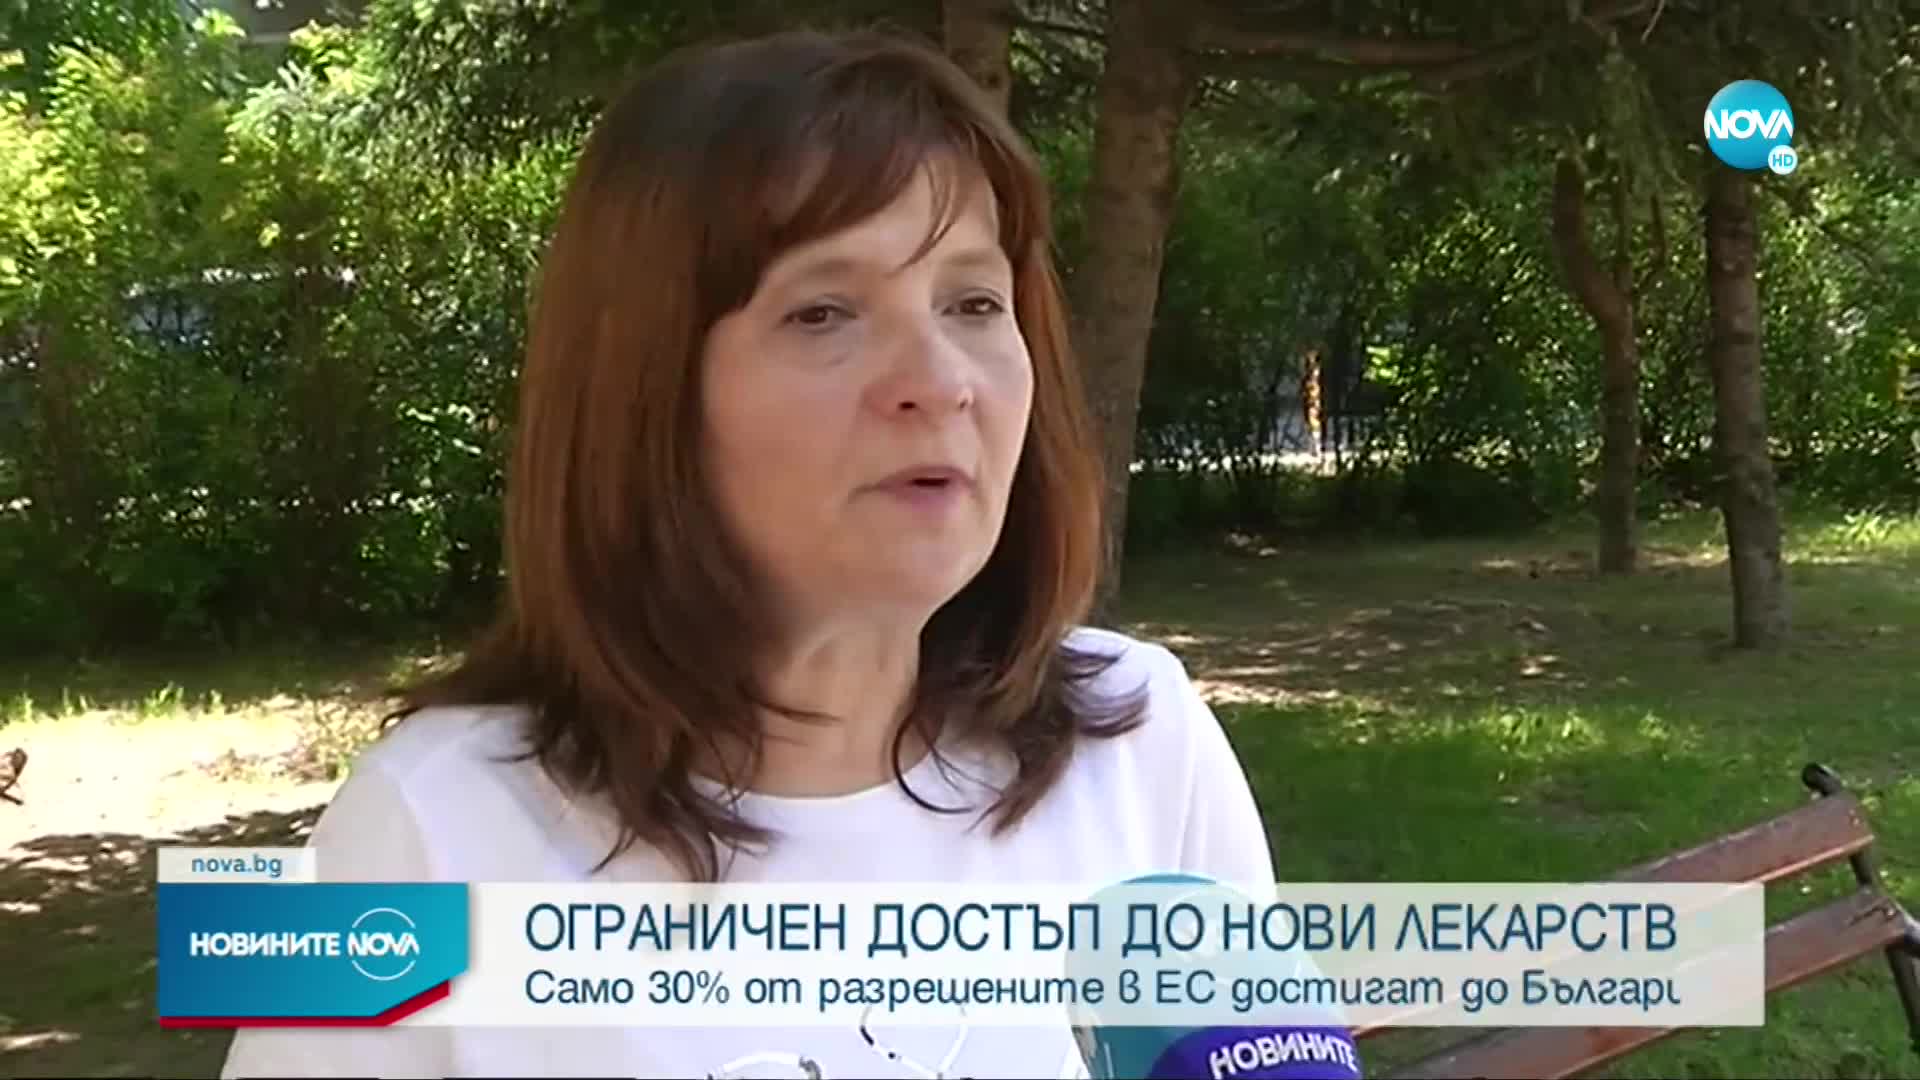 Едва 30% от разрешените в ЕС нови лекарства достигат до България